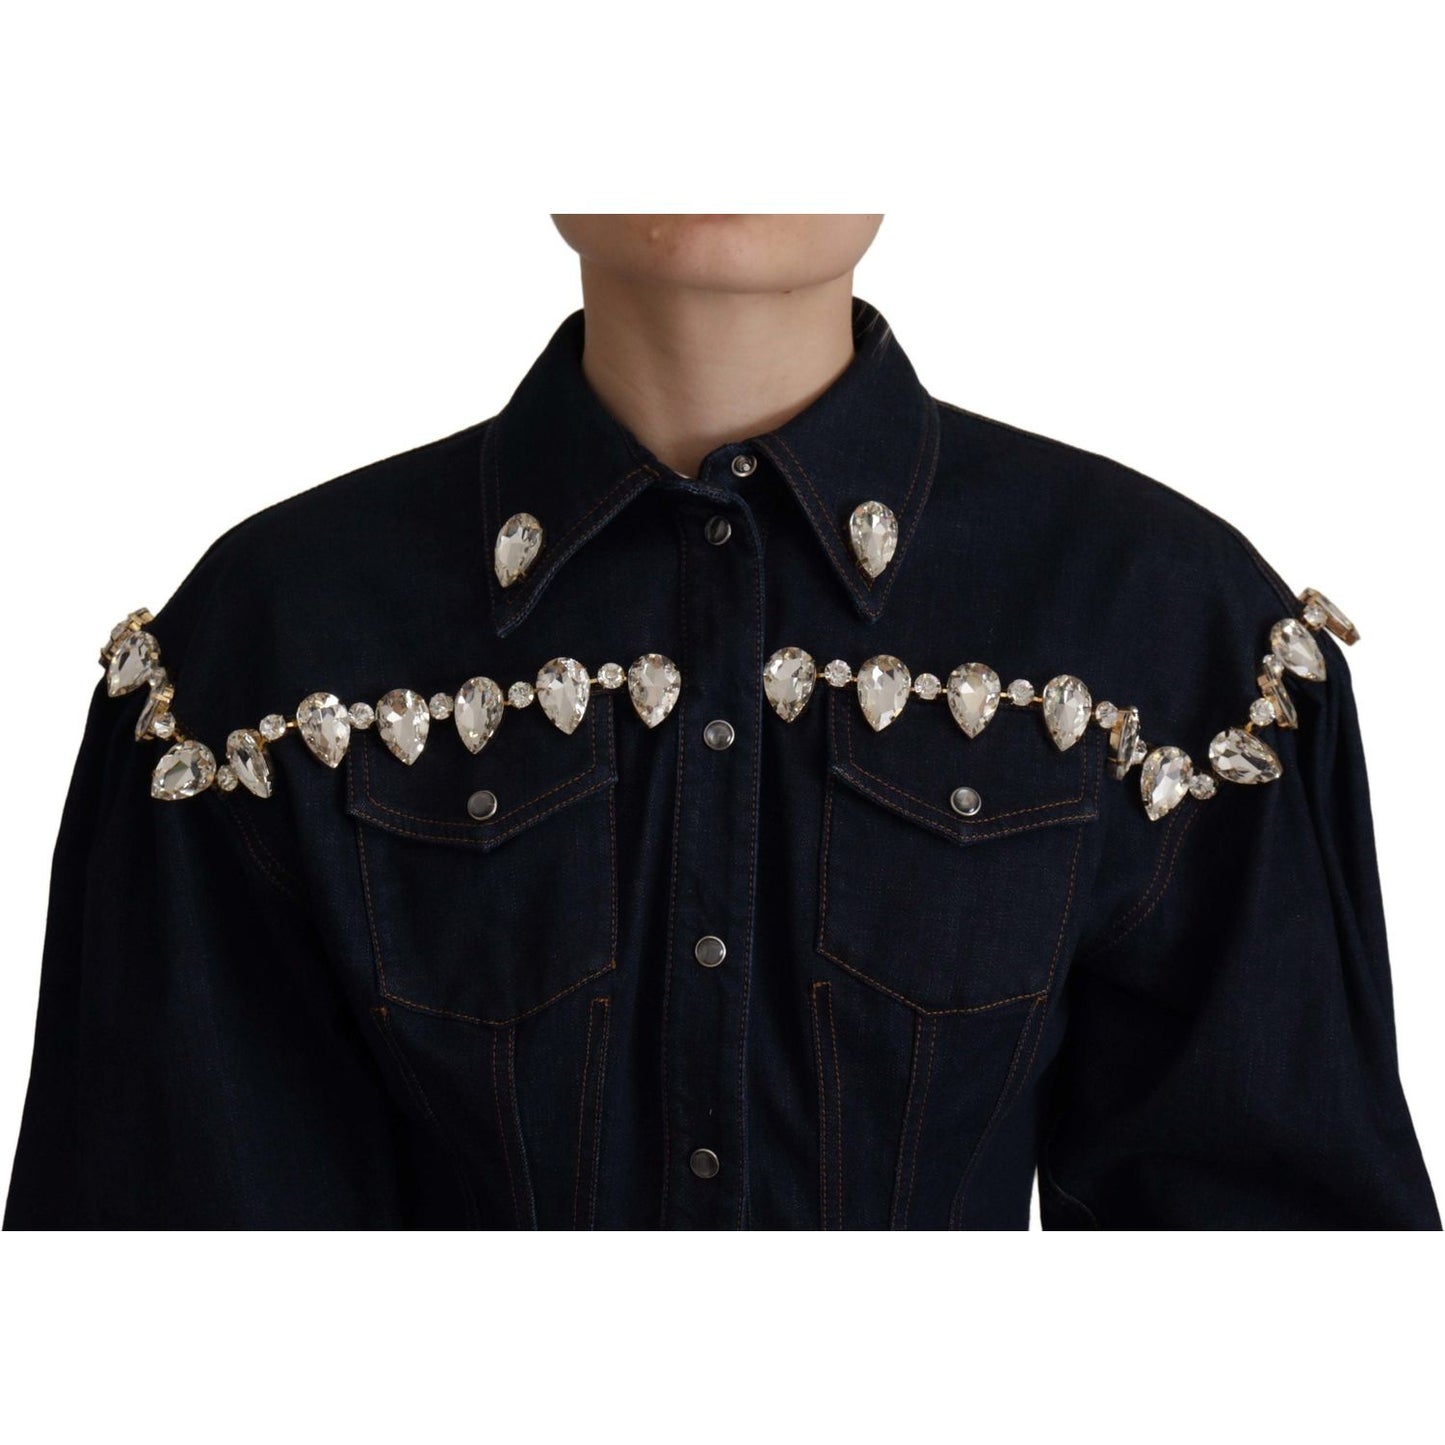 Dolce & Gabbana Elegant Crystal-Embellished Denim Jacket blue-denim-crystal-embellish-cotton-jacket